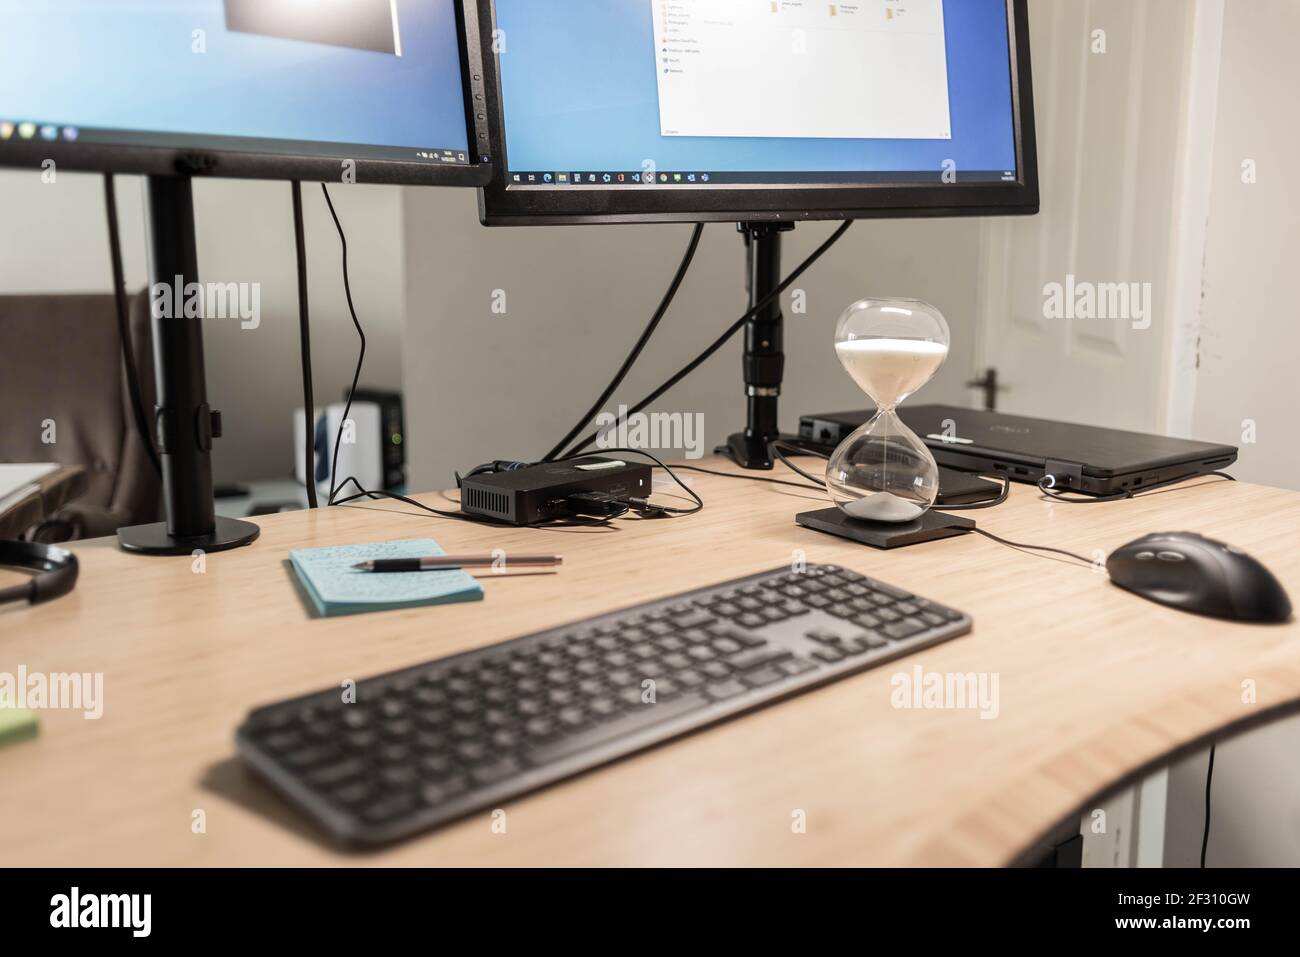 Una vista de cerca de un escritorio de una estación de trabajo con monitores, teclado, ratón, portátil, estación de acoplamiento y un temporizador de arena utilizado como técnica de enfoque. Foto de stock